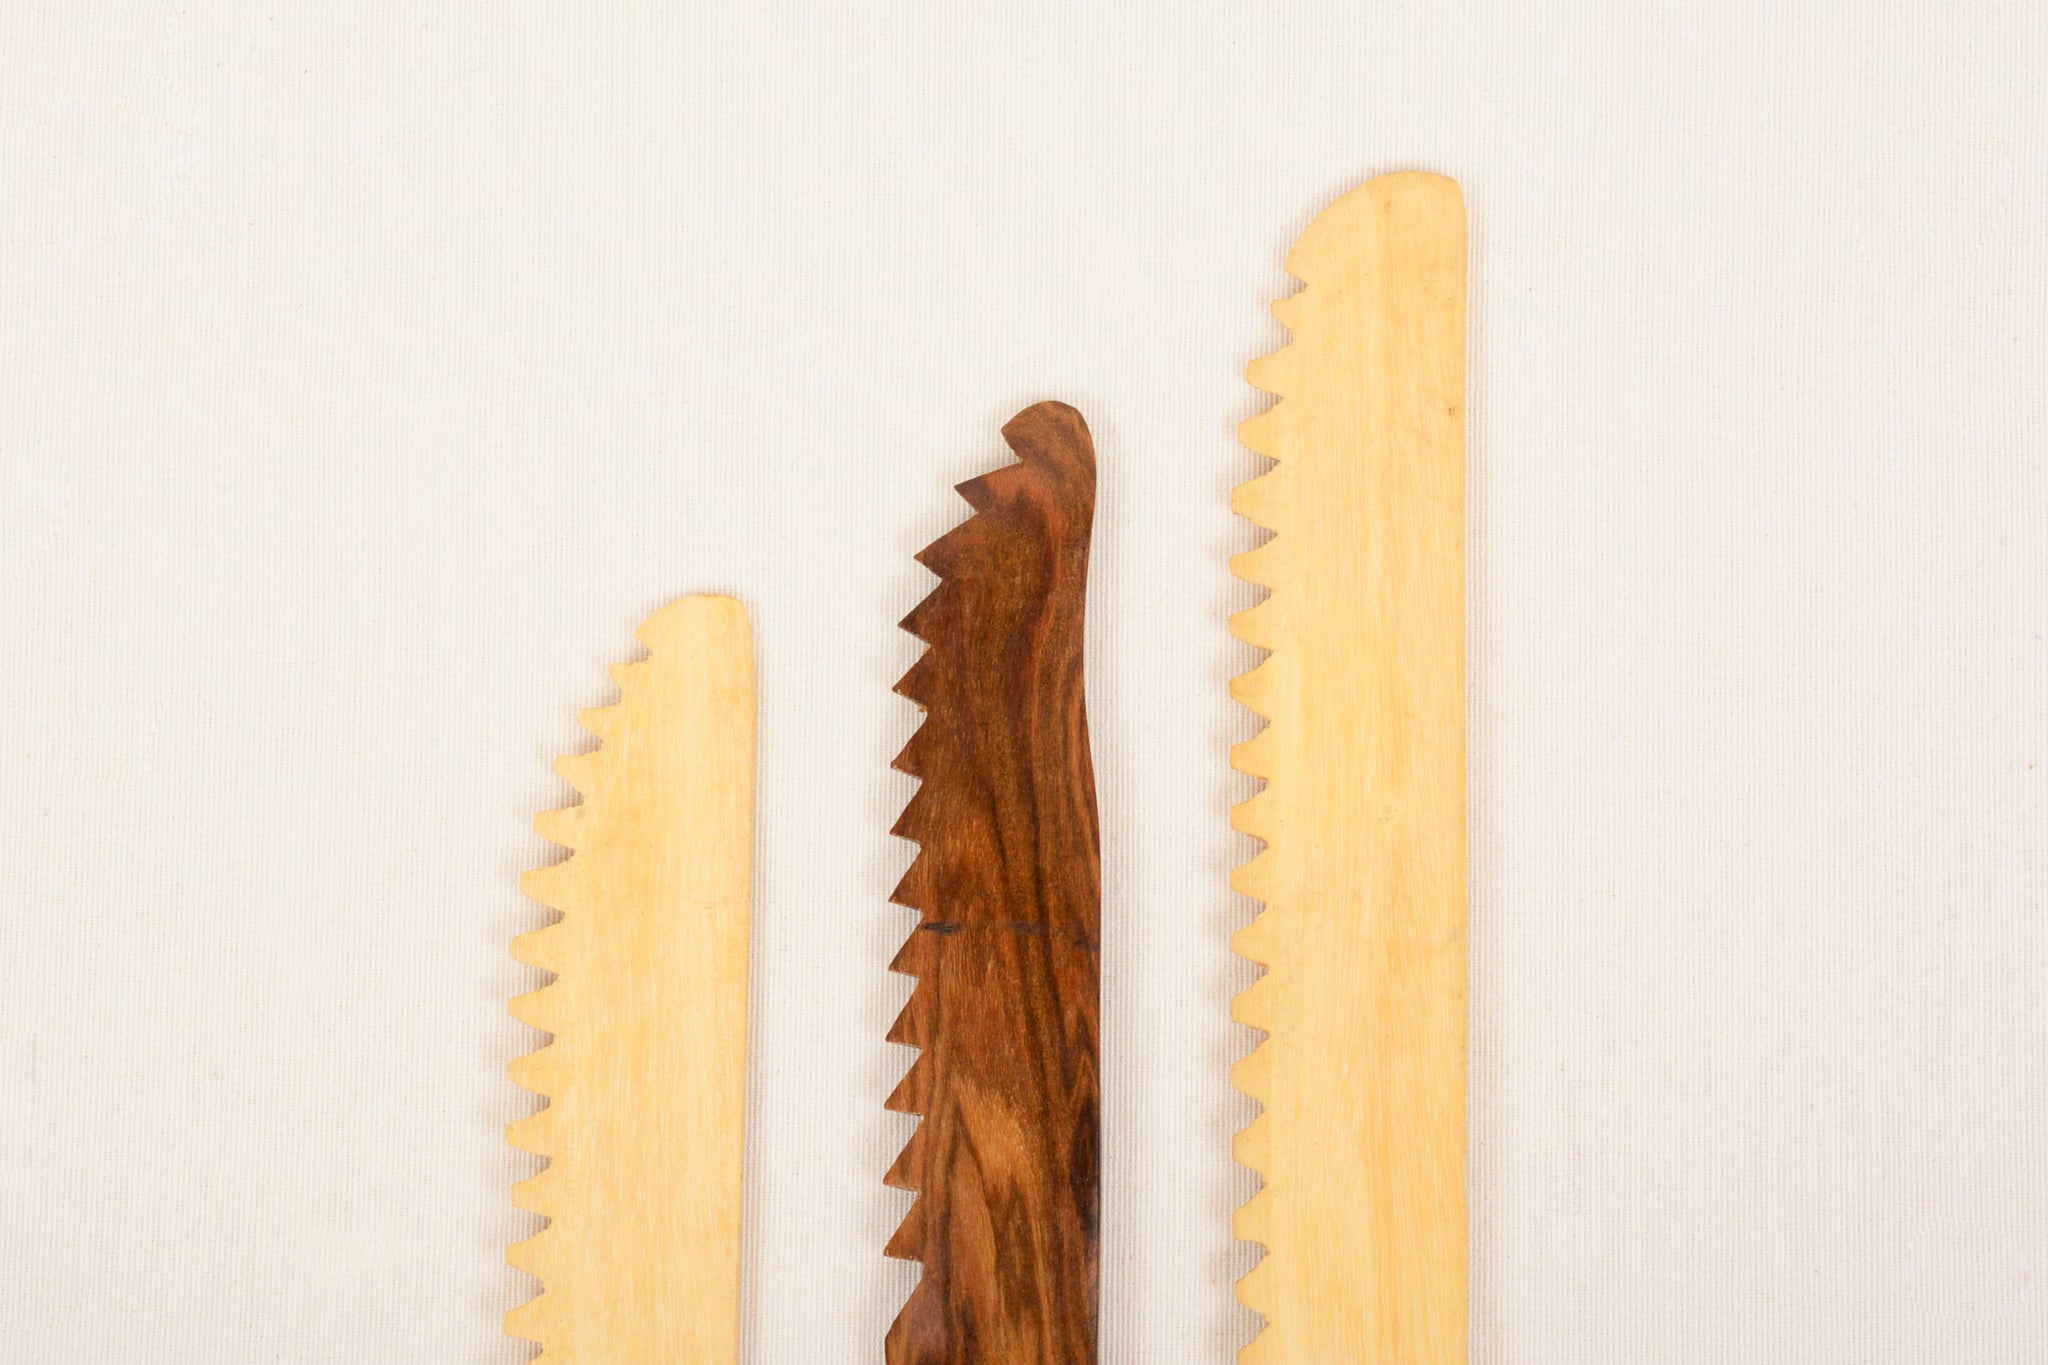 Cuchillo de madera de coco